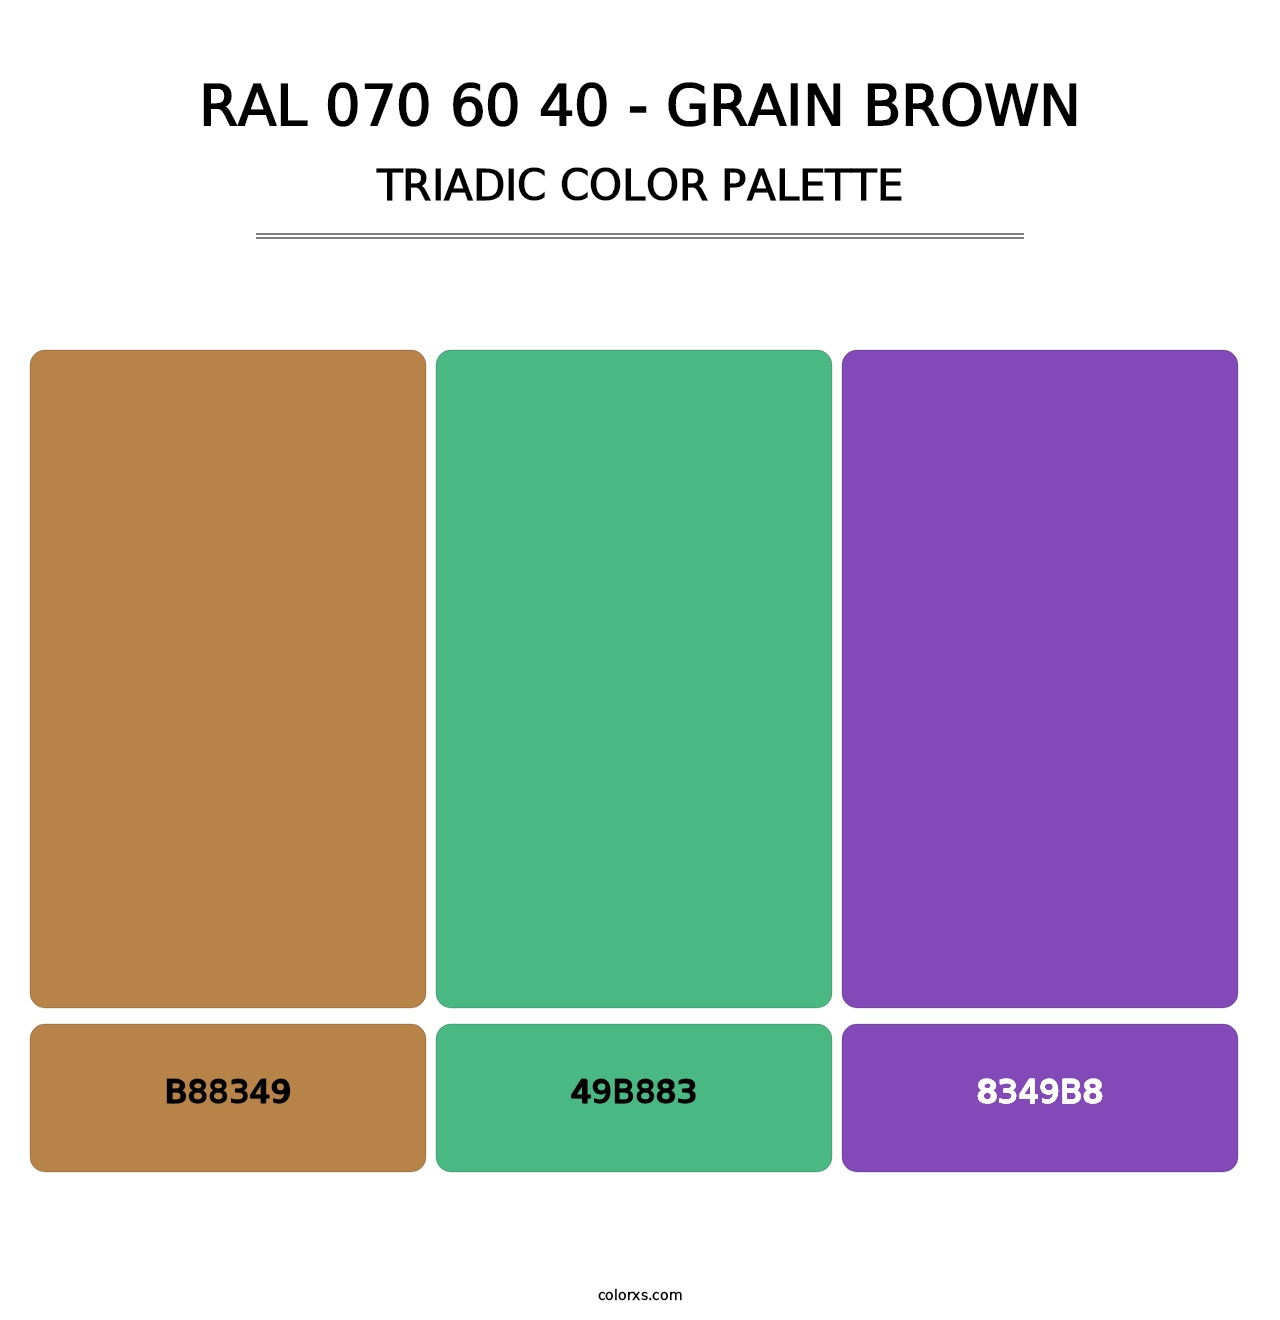 RAL 070 60 40 - Grain Brown - Triadic Color Palette